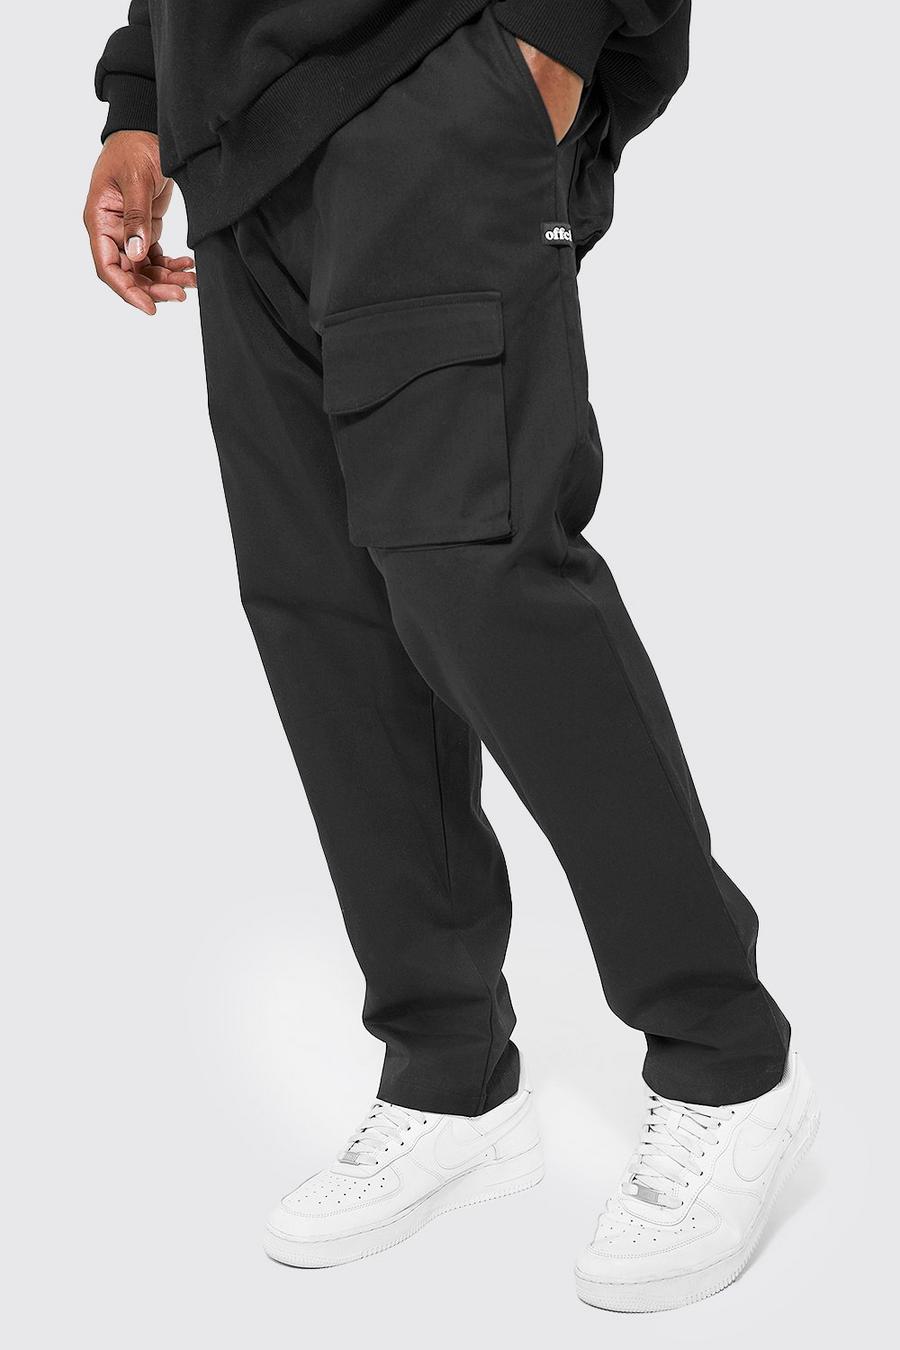 Pantaloni Plus Size Slim fit con tasche curve, Black nero